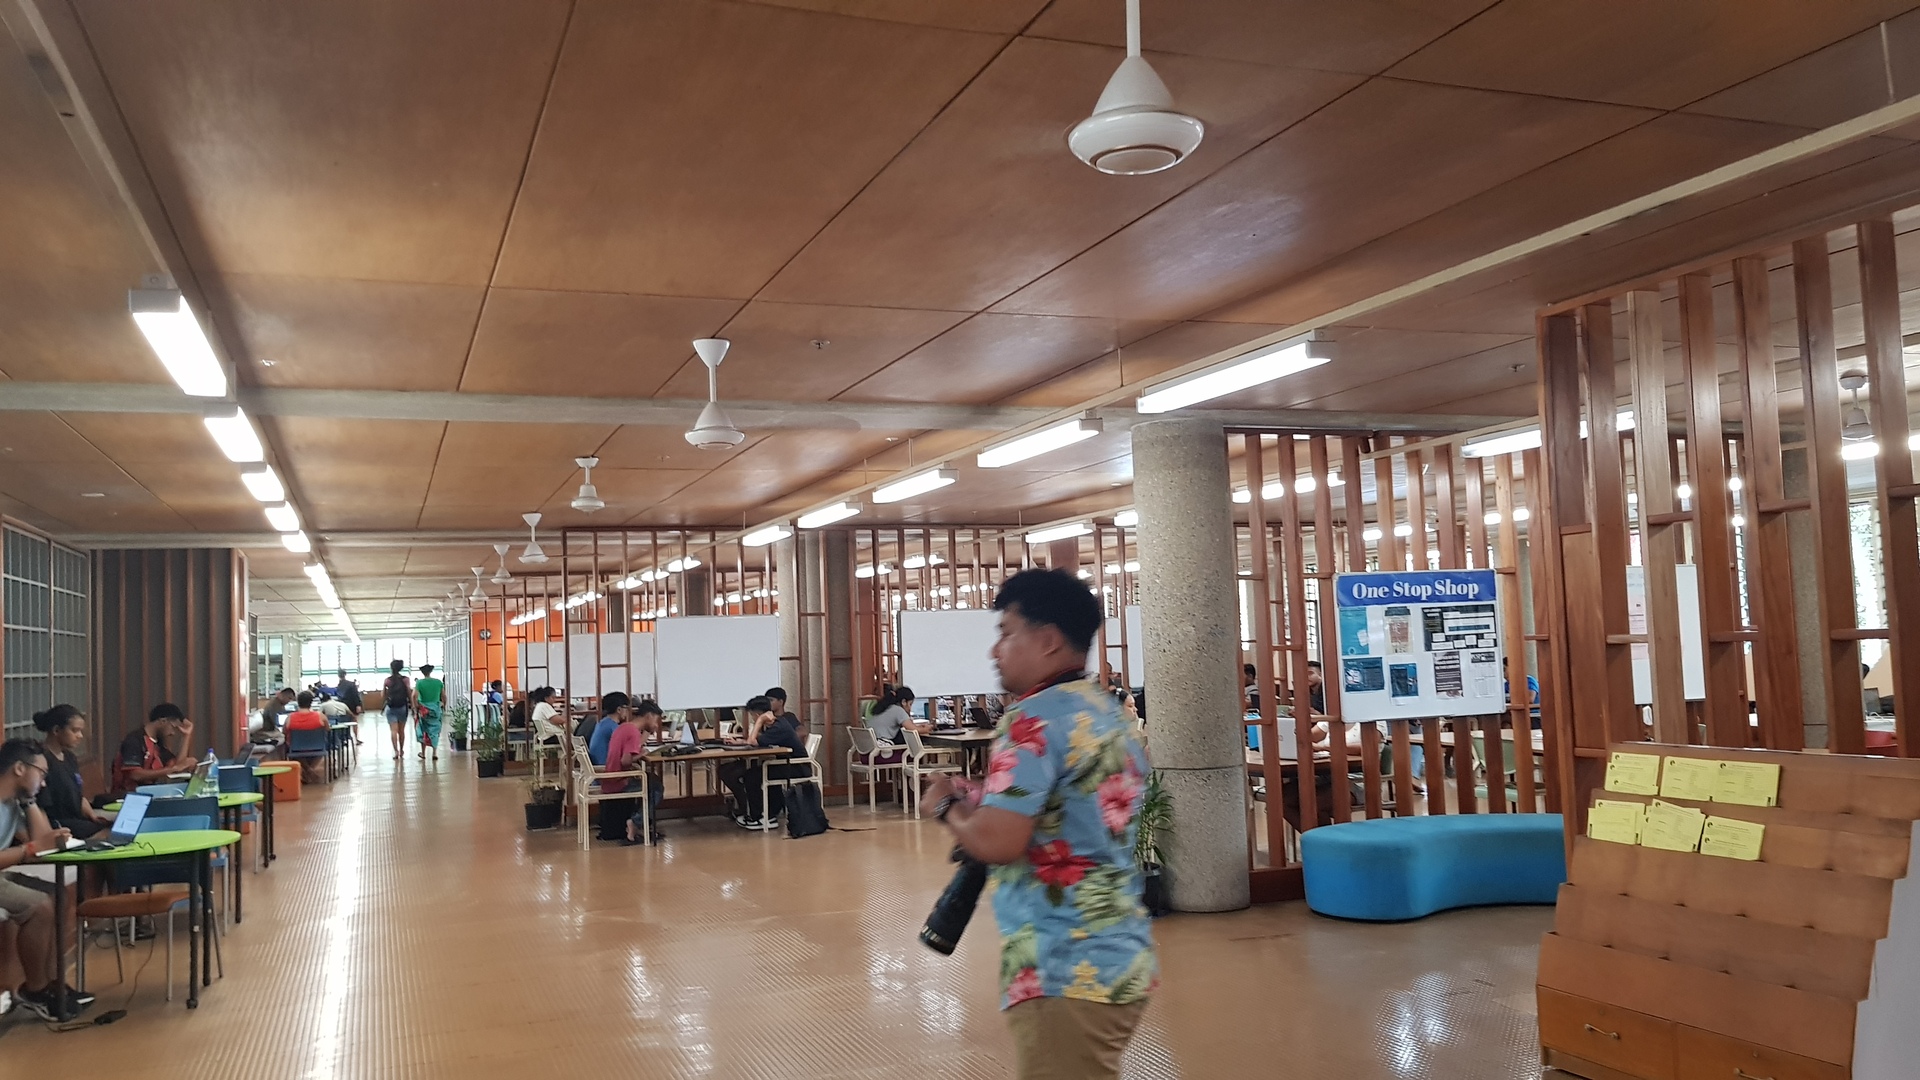 參觀University of South Pacific，圖書館裡許多學生在讀書，論文做Pacific(太平洋)相關的研究，都會特別收藏